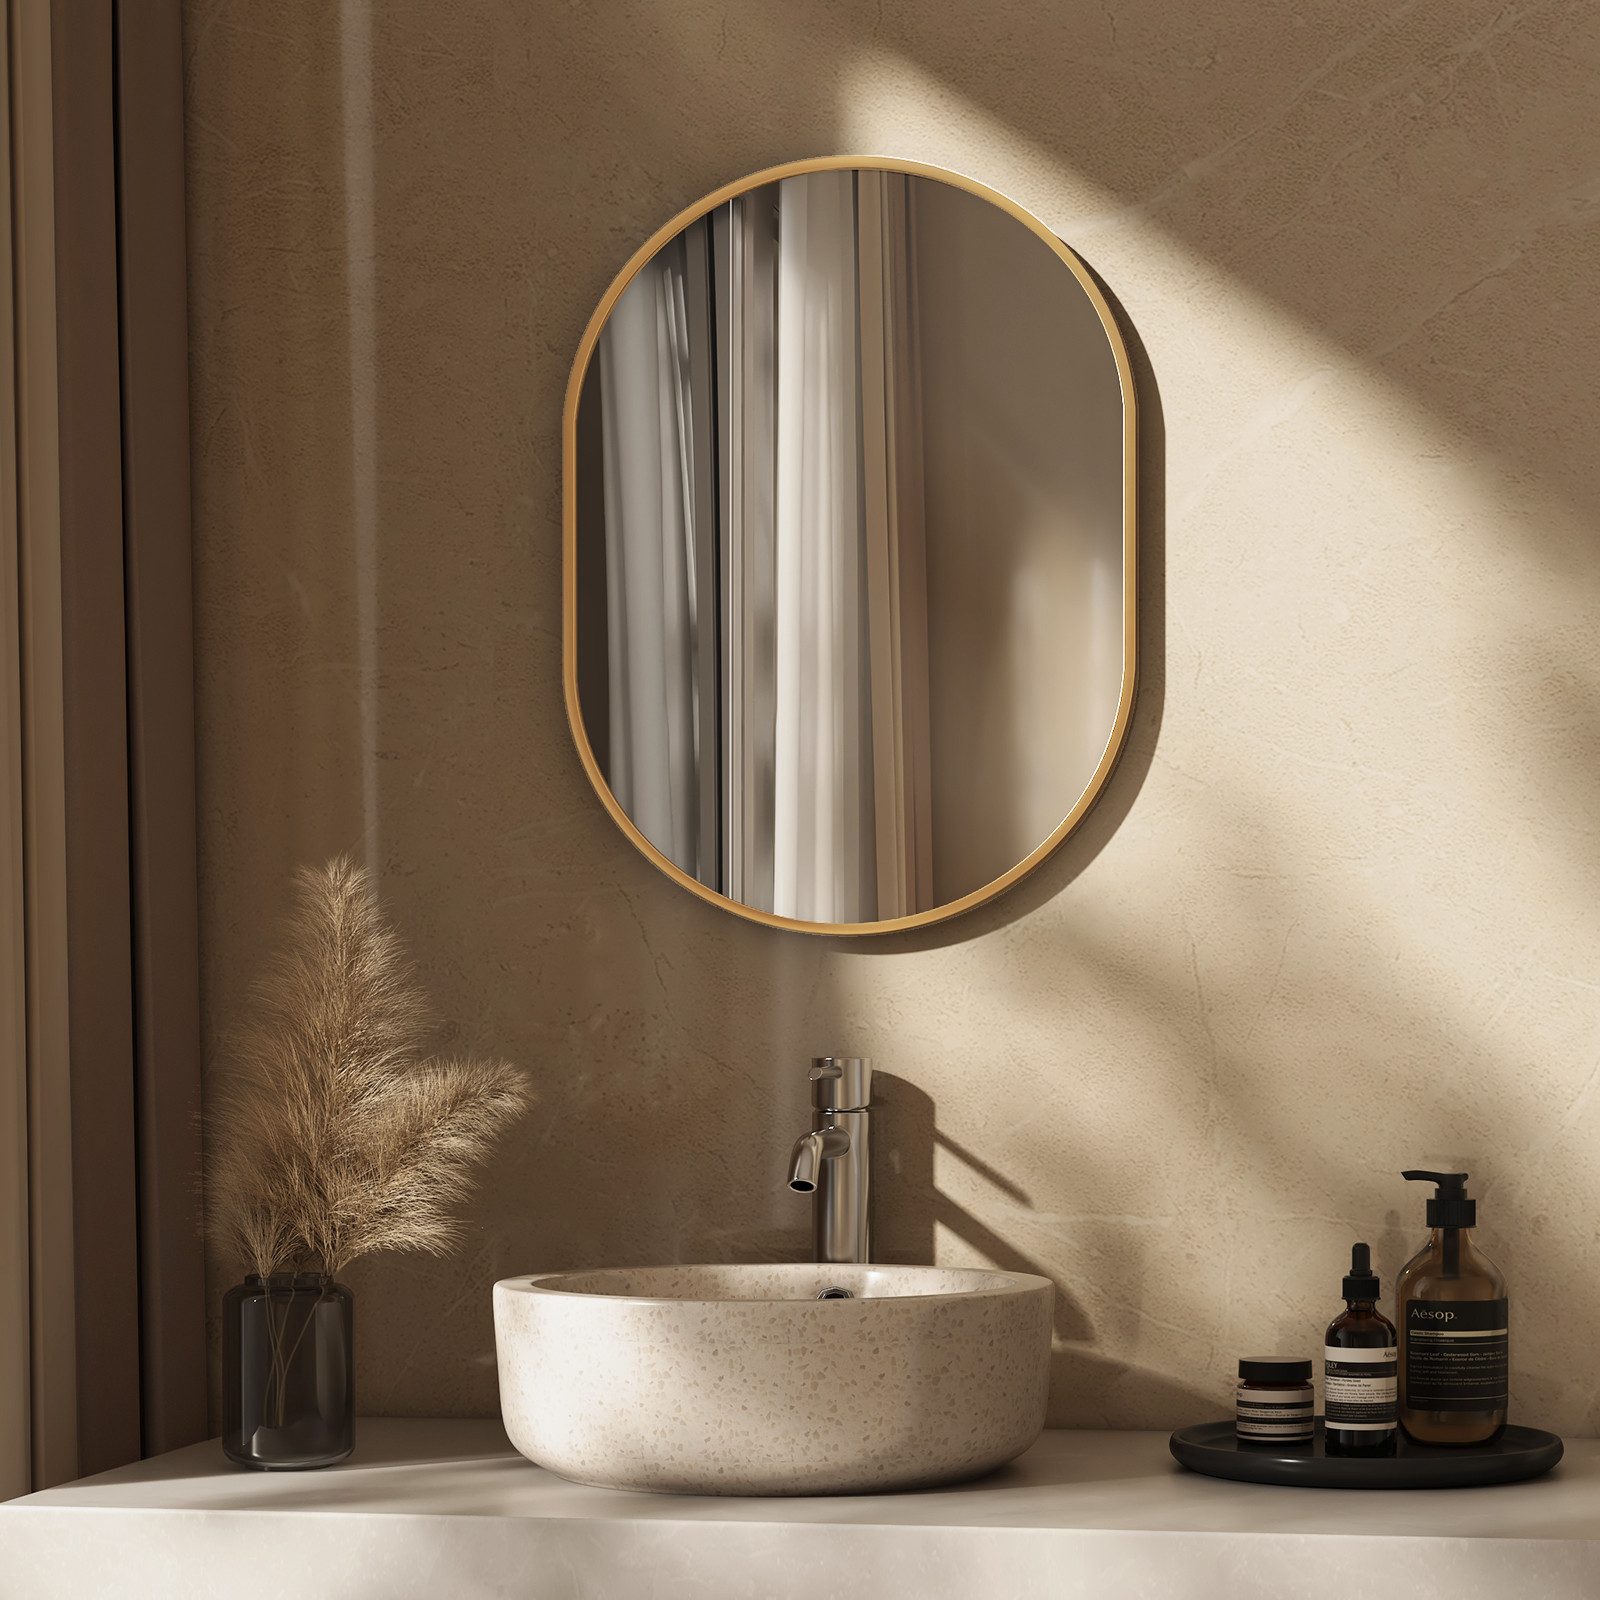 EMKE Badspiegel Ovaler Badezimmerspiegel Goldener Rahmen Wandspiegel, Vertikal Horizontal Montage,Badezimmer Garderobe Flur